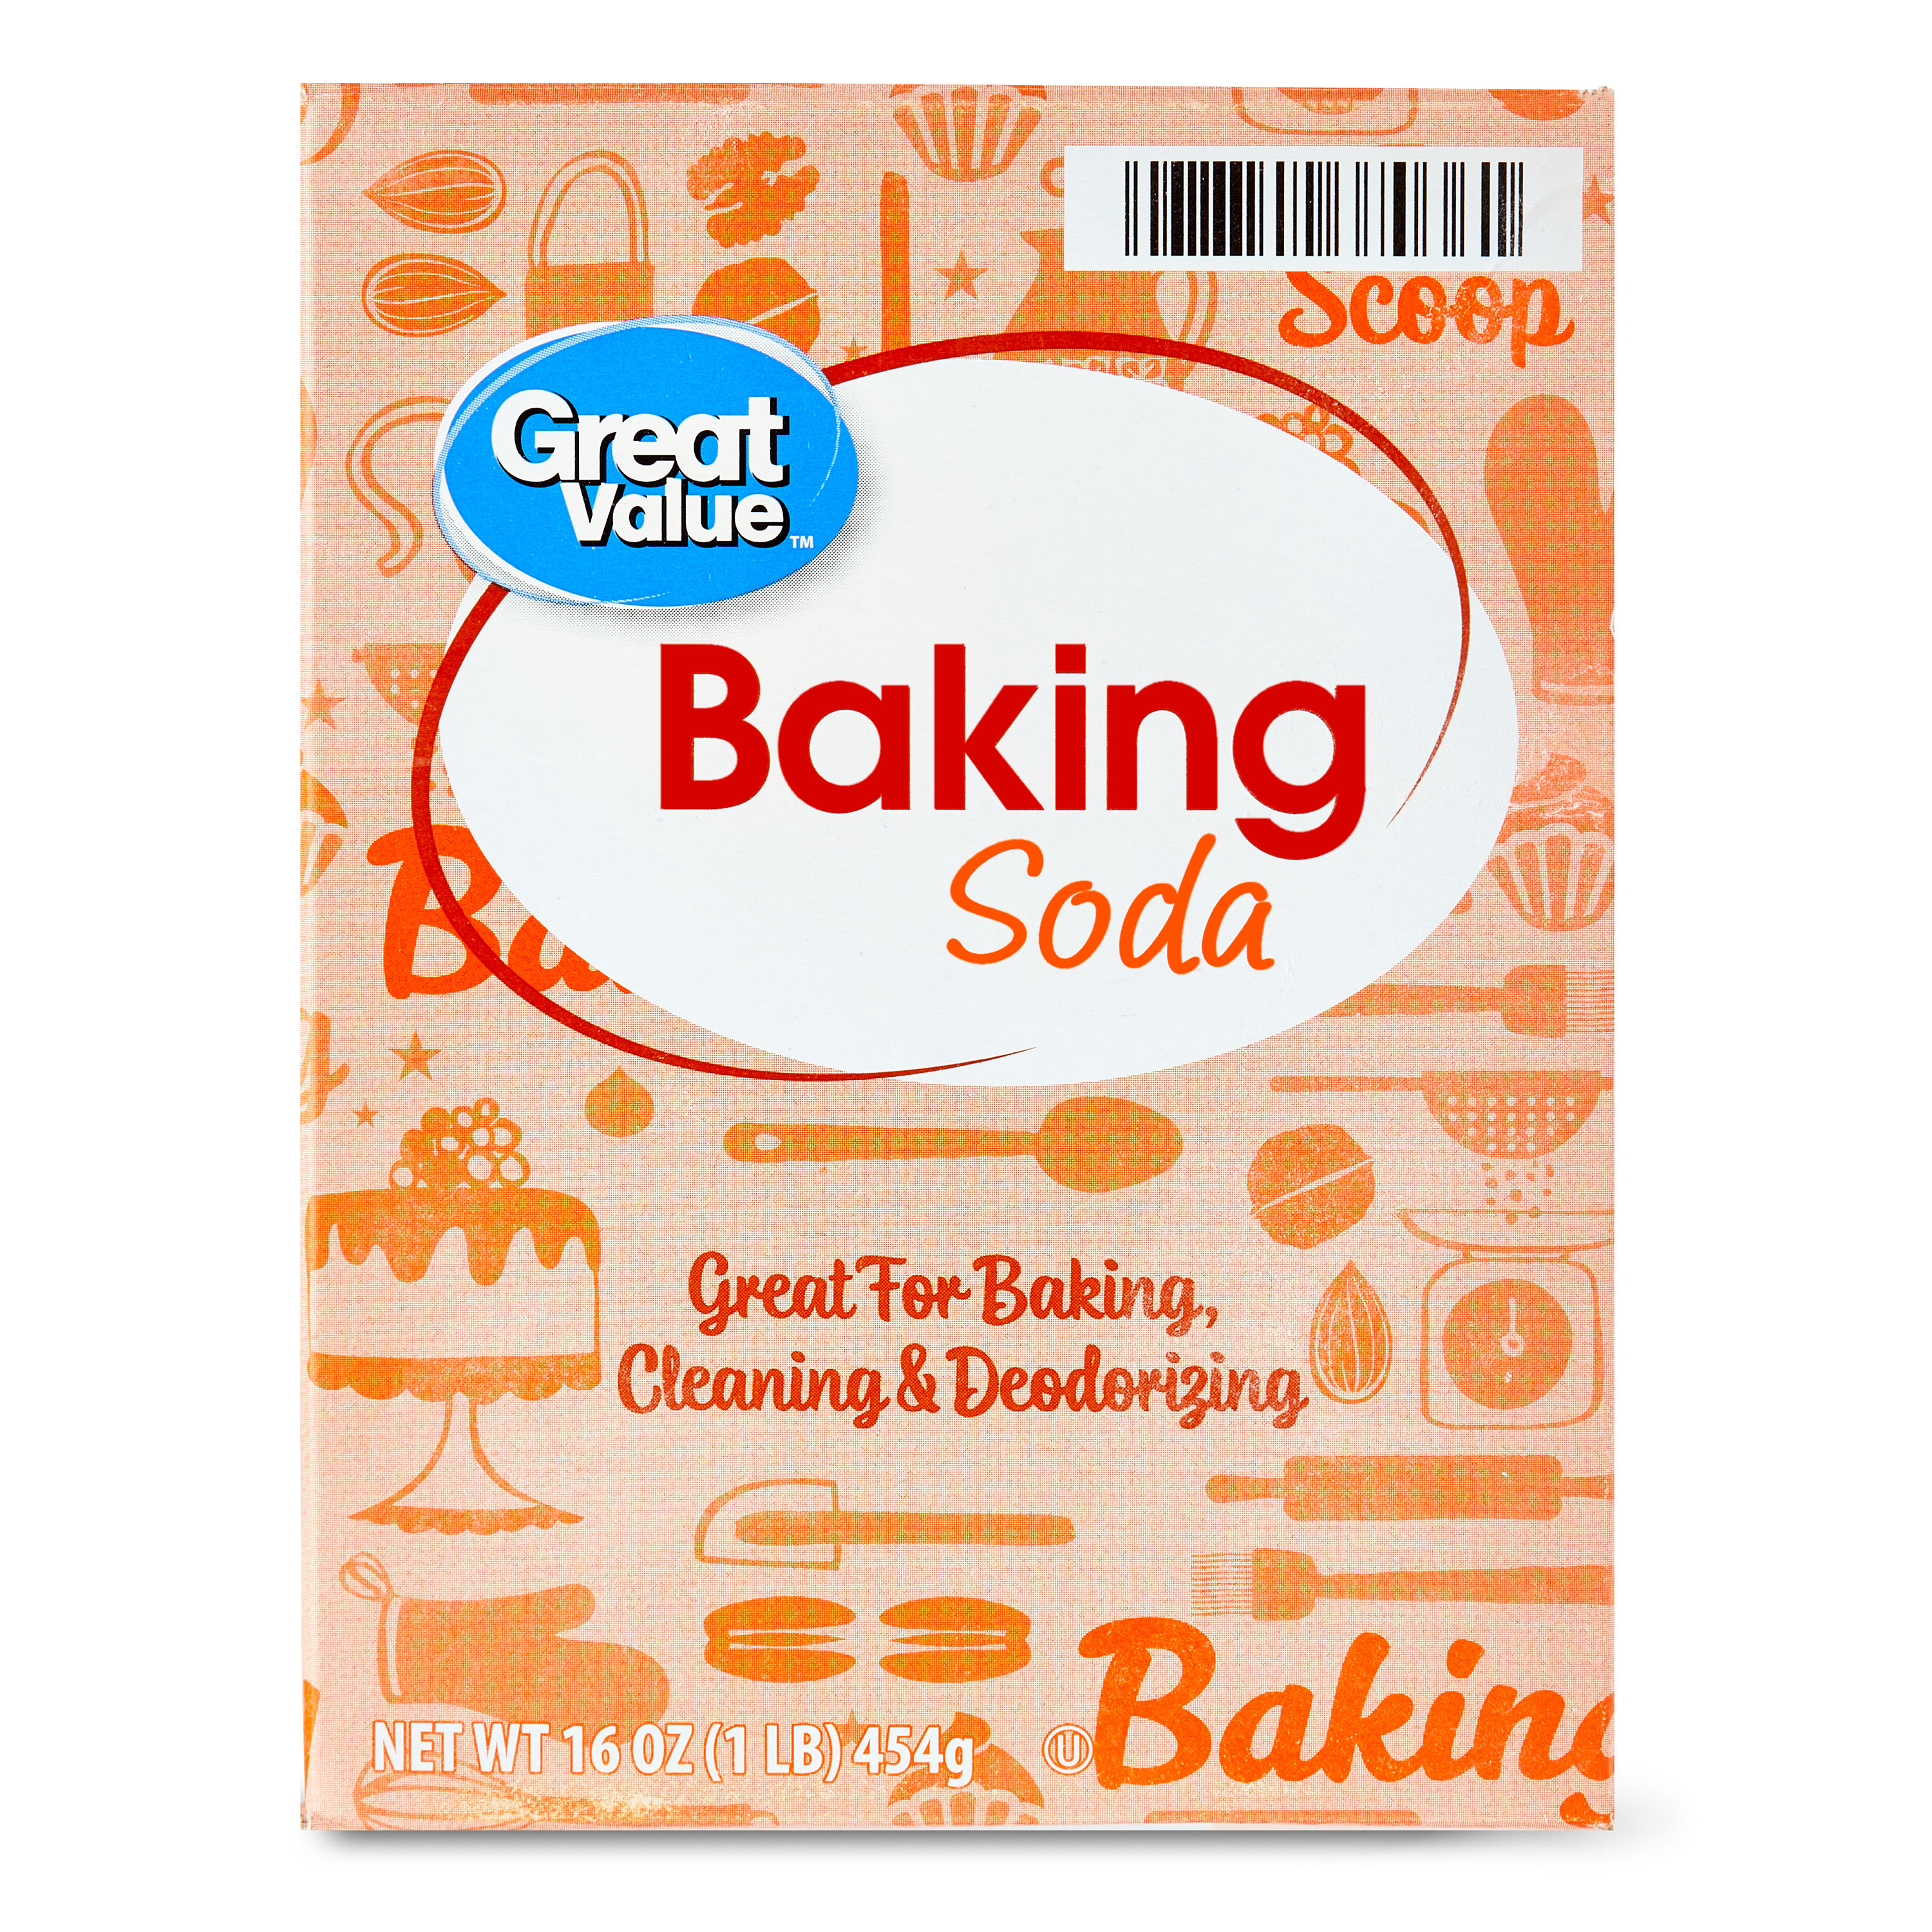 Great Value Baking Soda, 16 oz - image 1 of 8